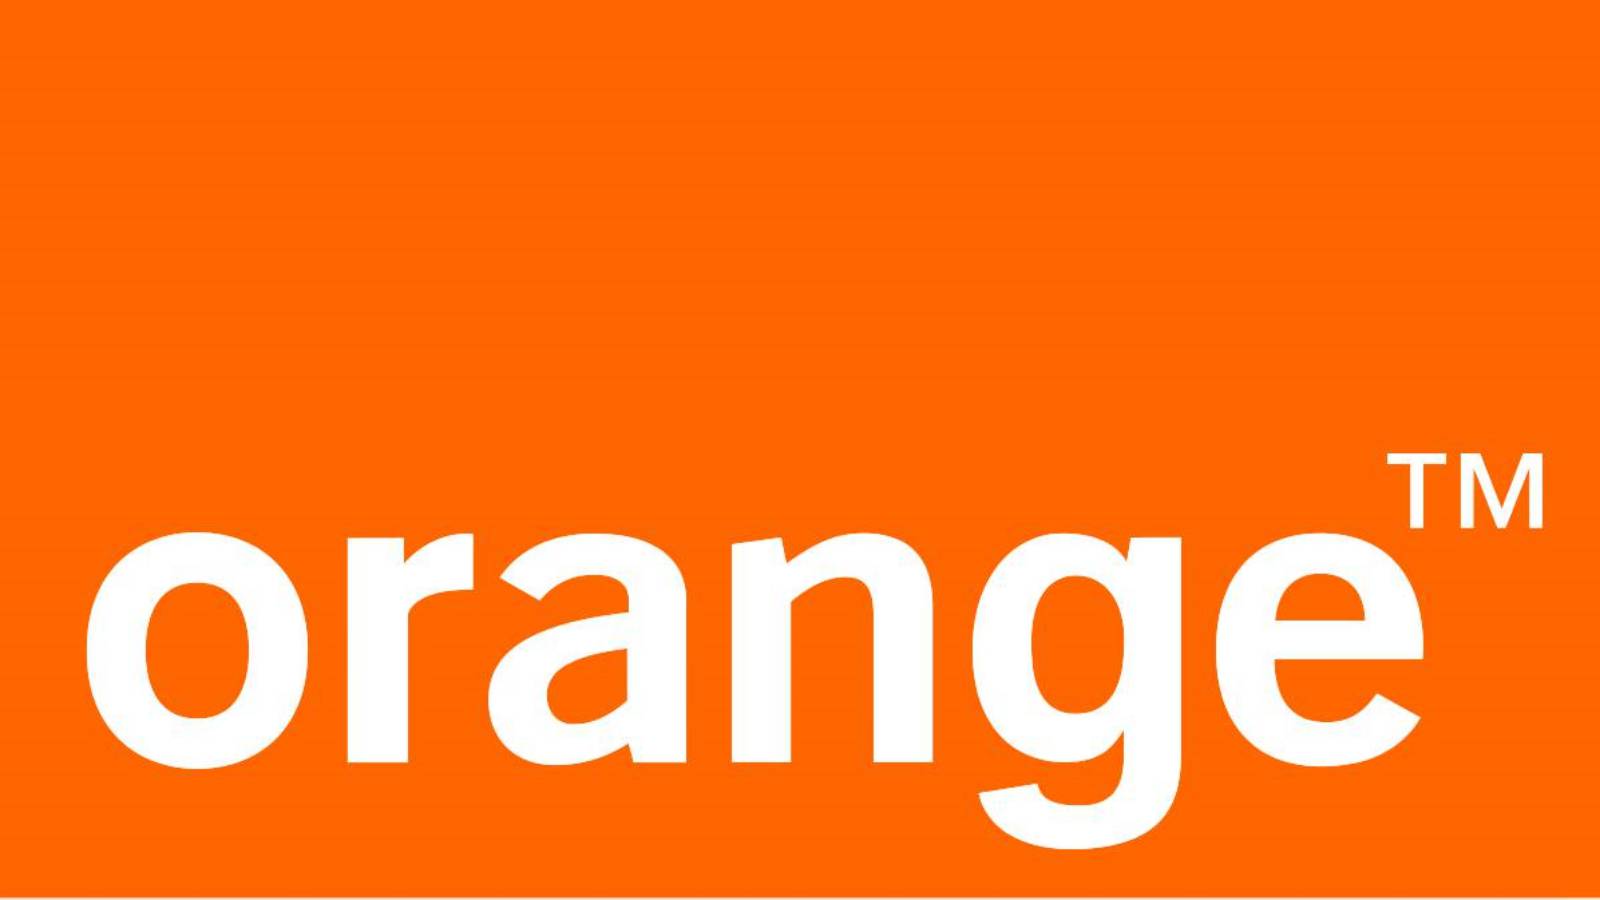 retorno naranja